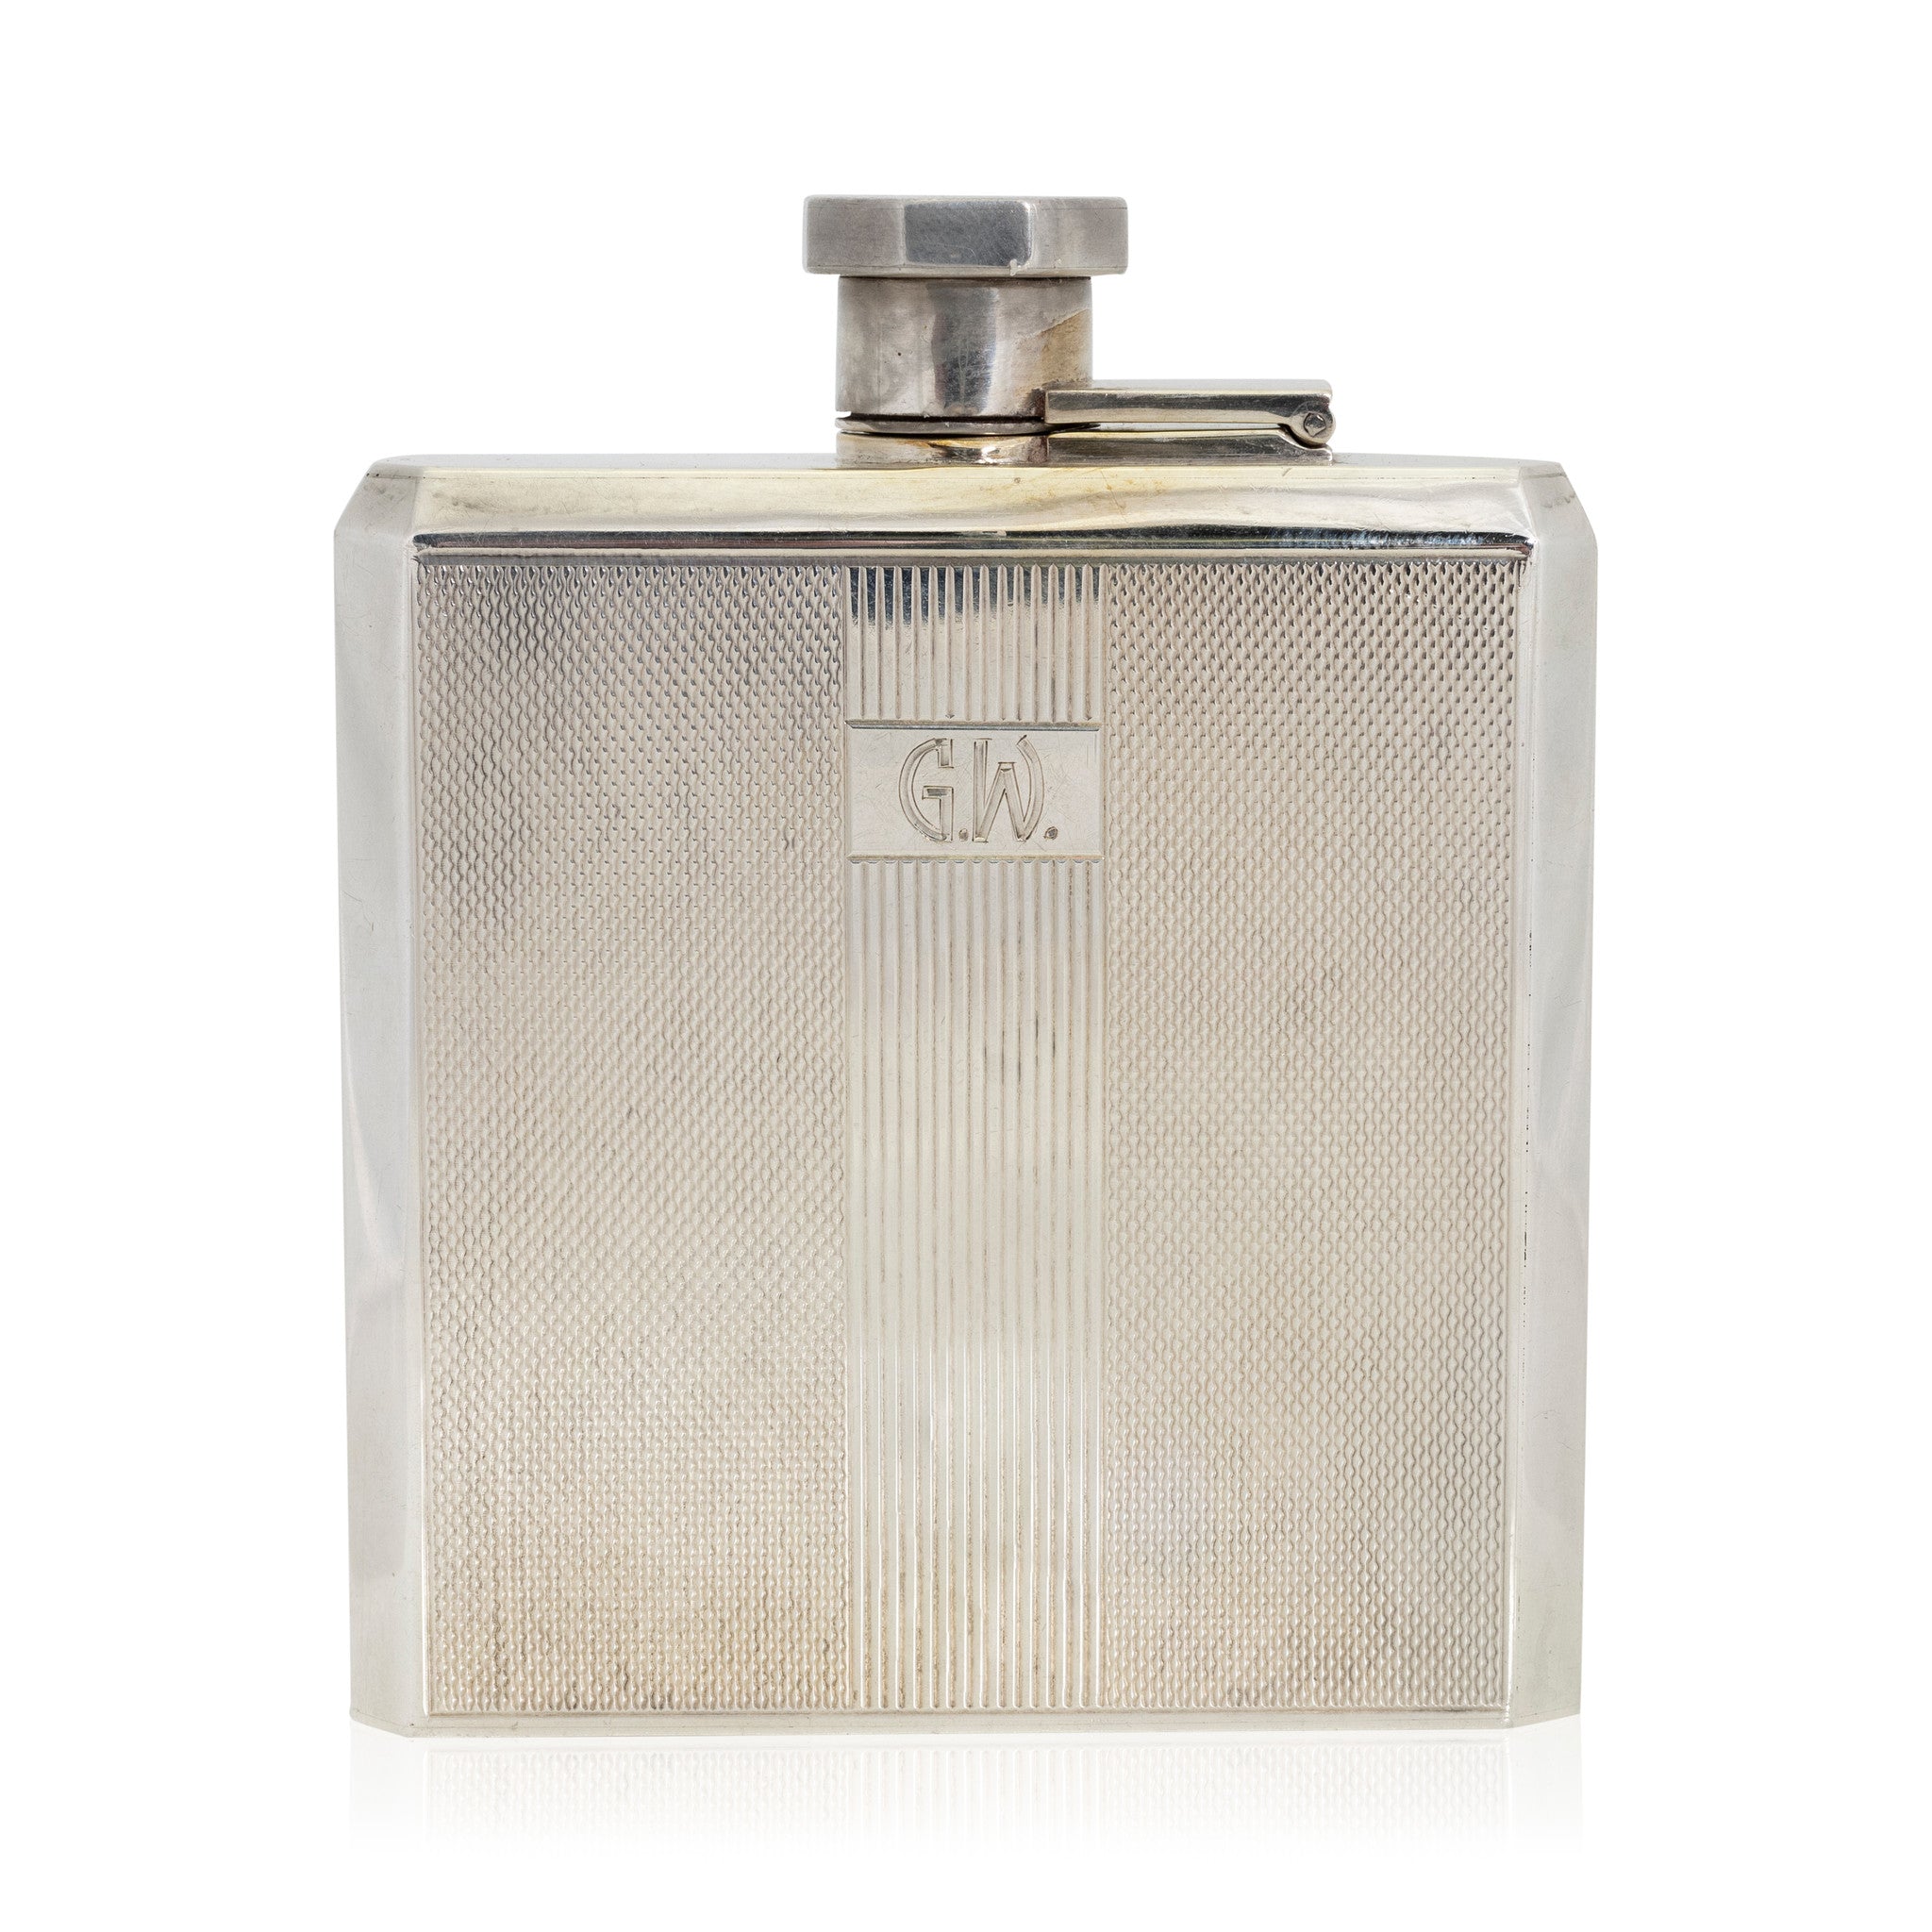 Sterling Gentleman's Pocket Flask, Furnishings, Barware, Flask